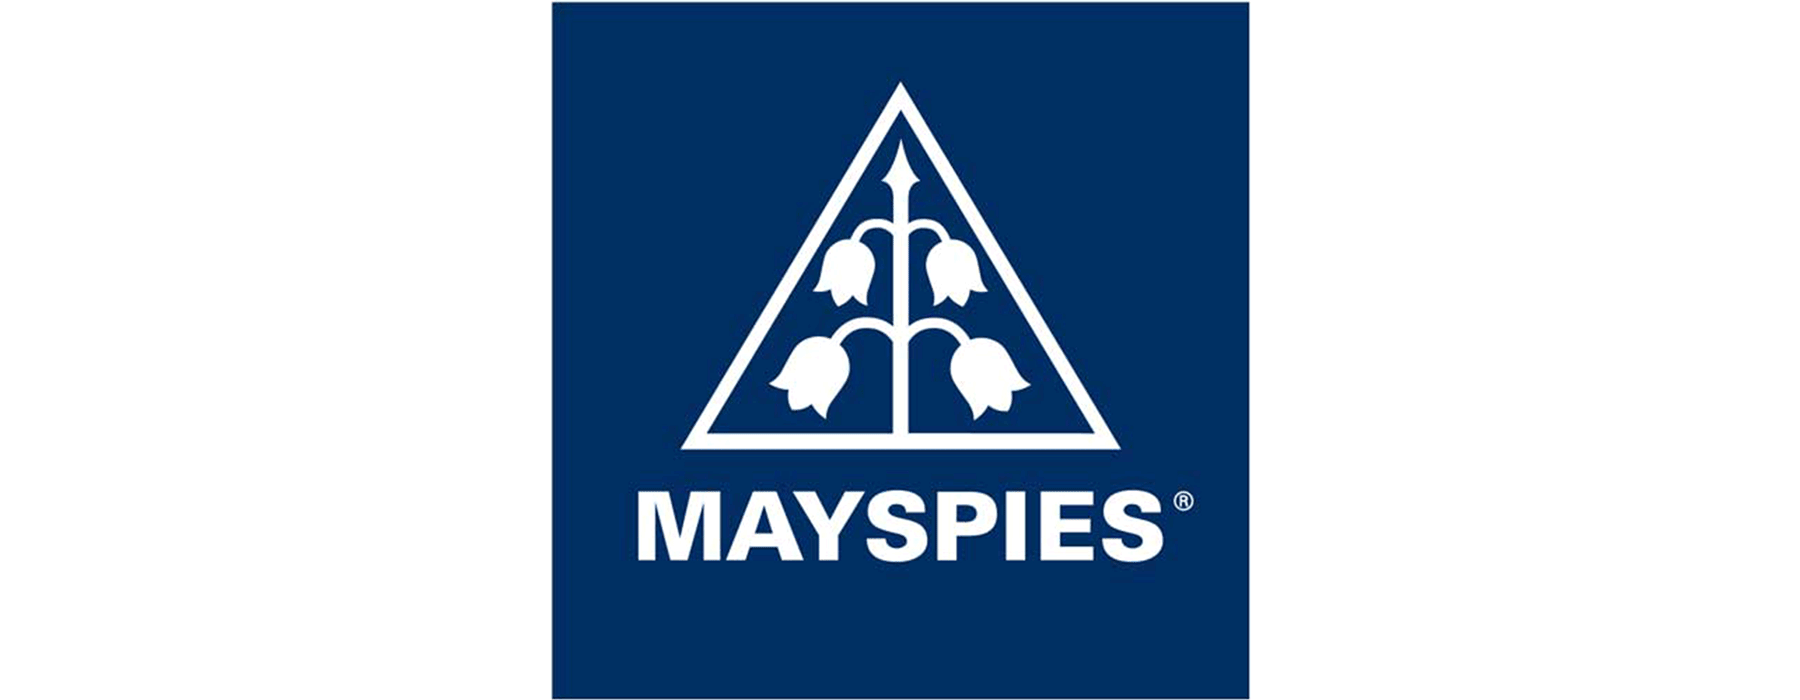 Mayspies-Logo